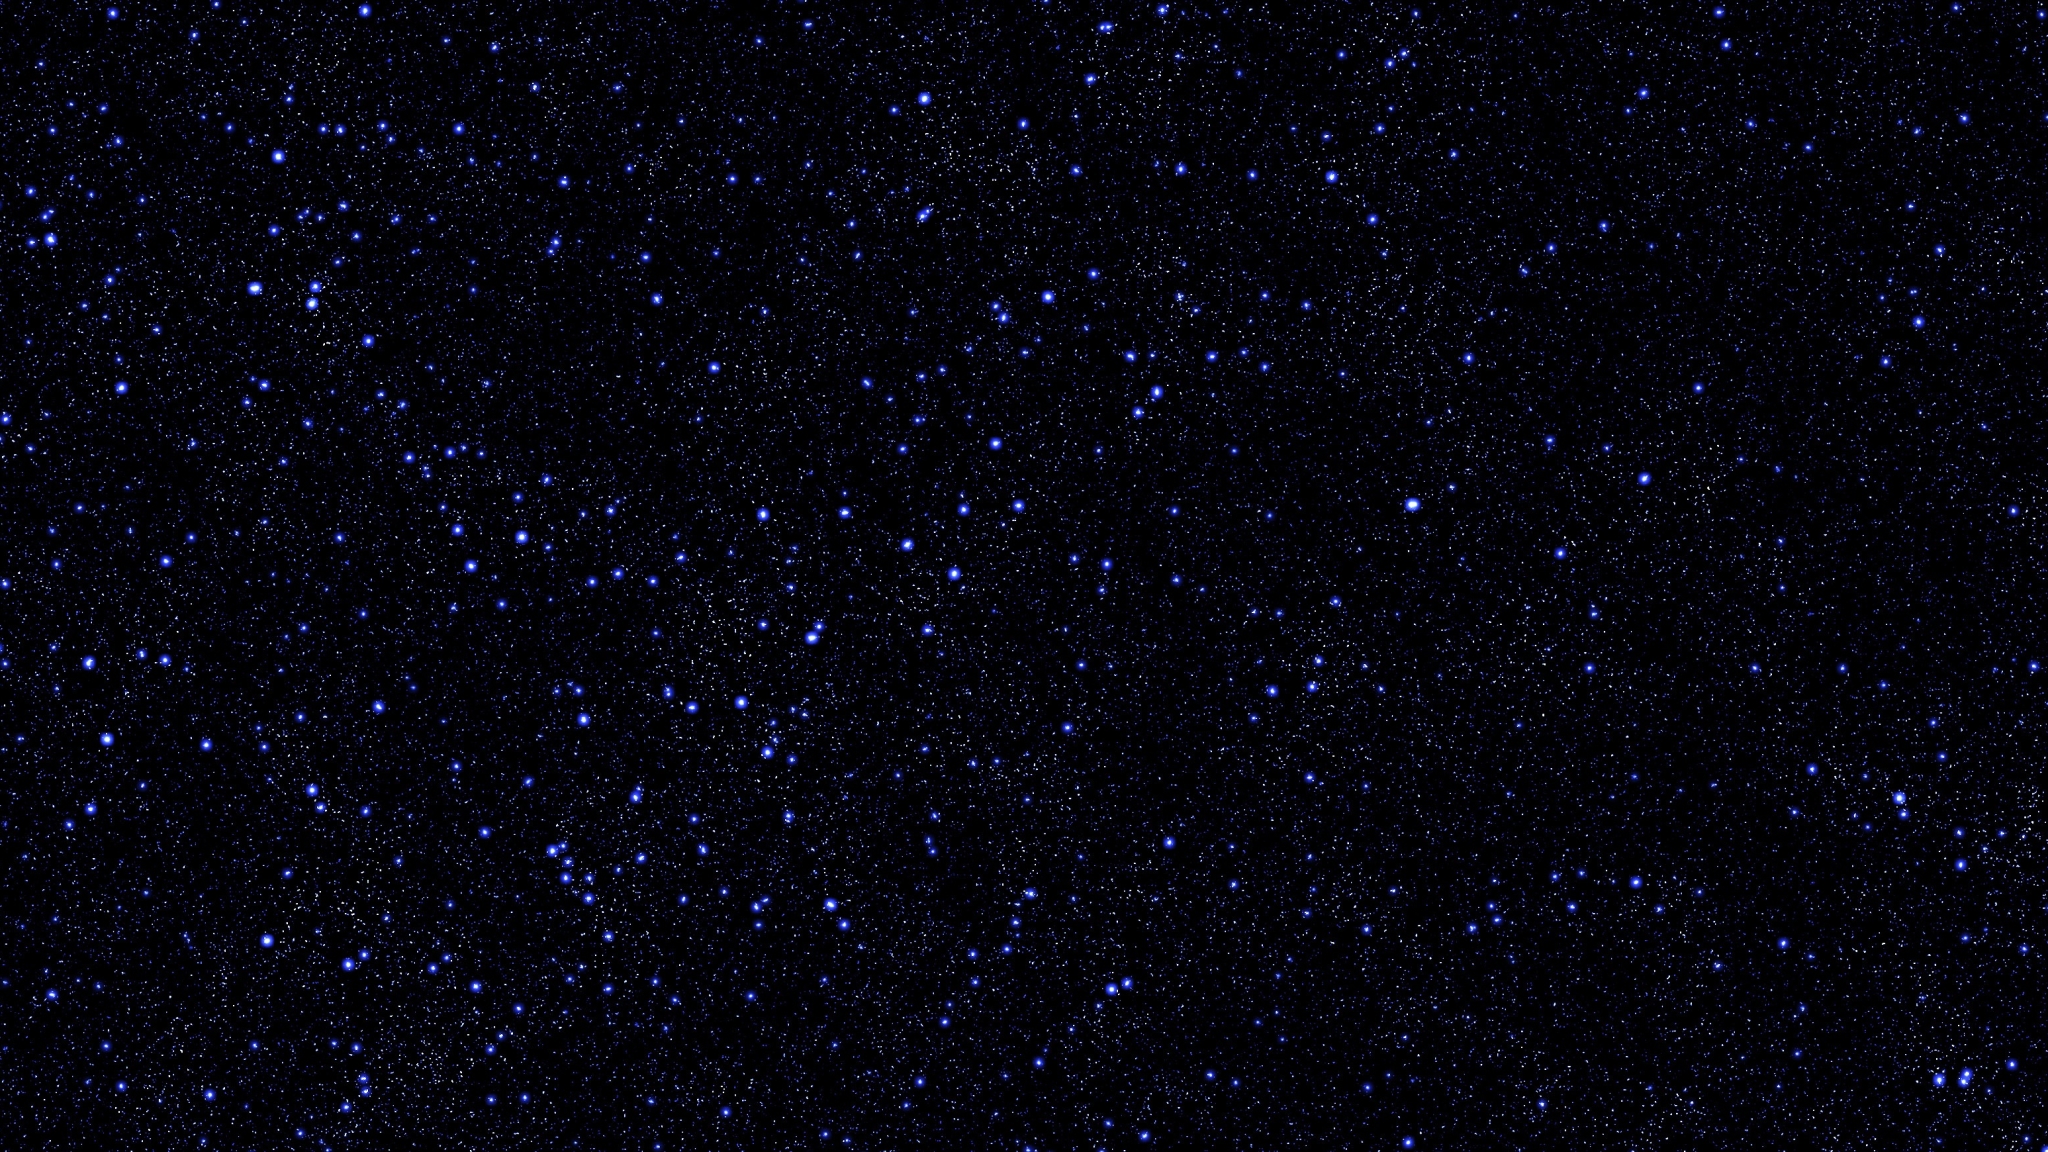 2048x1152 stars, sky, night 2048x1152 Resolution Wallpaper, HD Space 4K